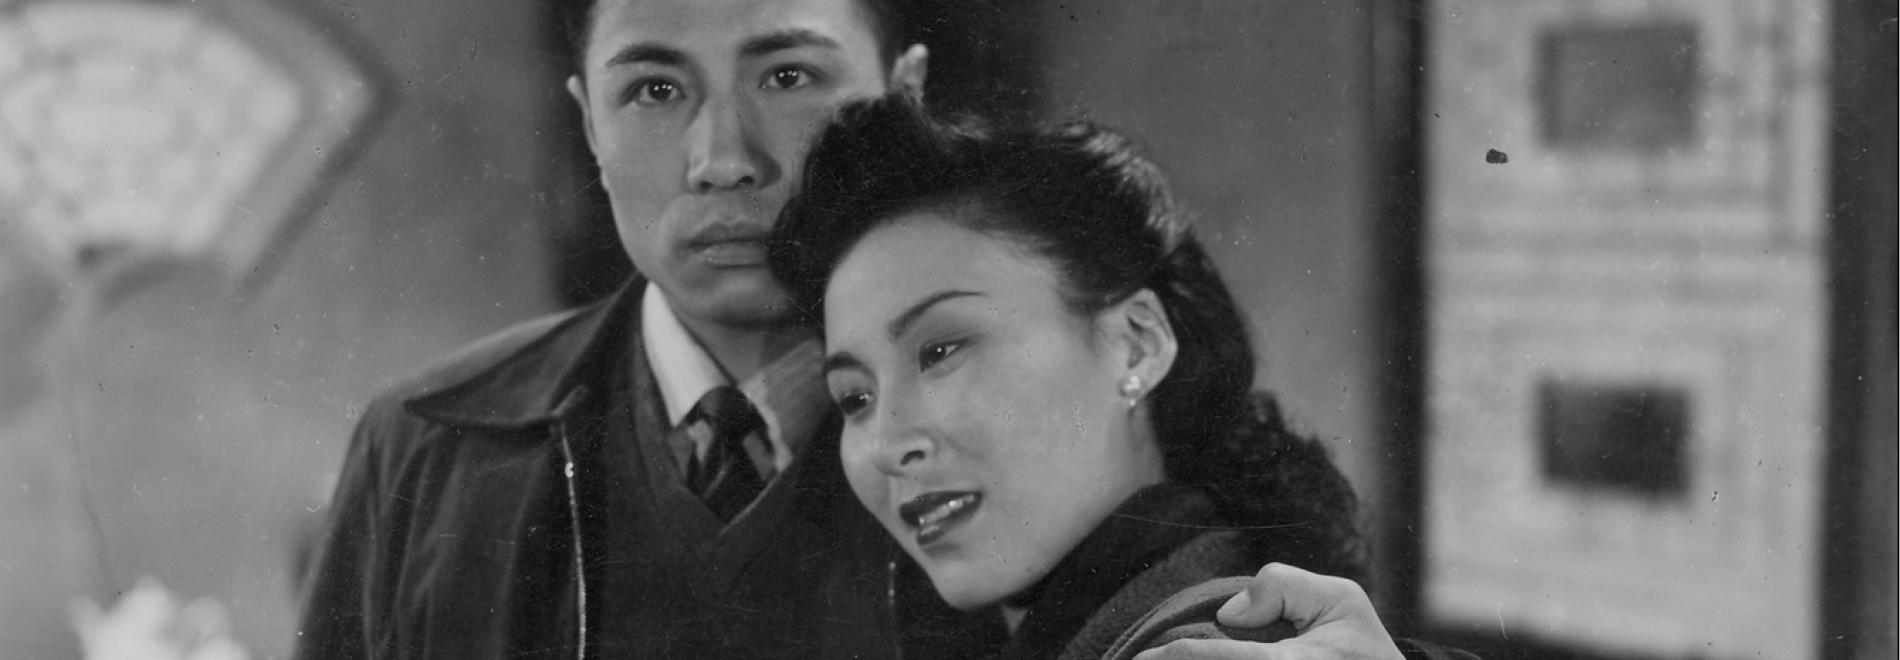 Xiao cheng zhi chun  (Mu Fei, 1948)